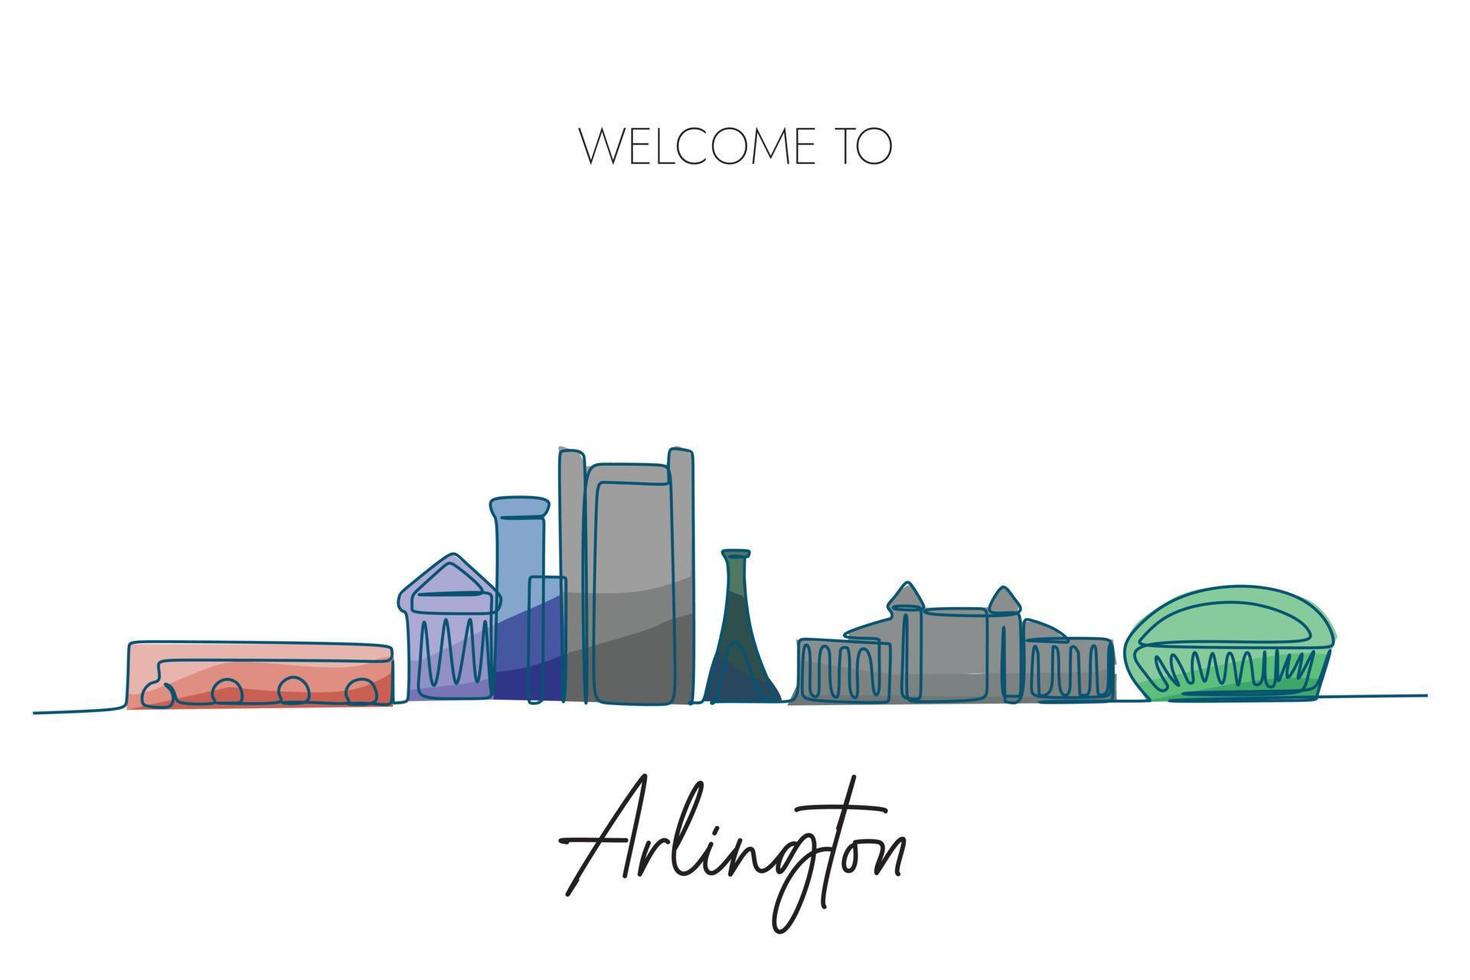 arlington, dibujo de línea continua del horizonte de la ciudad de ee.uu. con colores degradados monocromáticos. ilustración vectorial dibujada a mano. vector